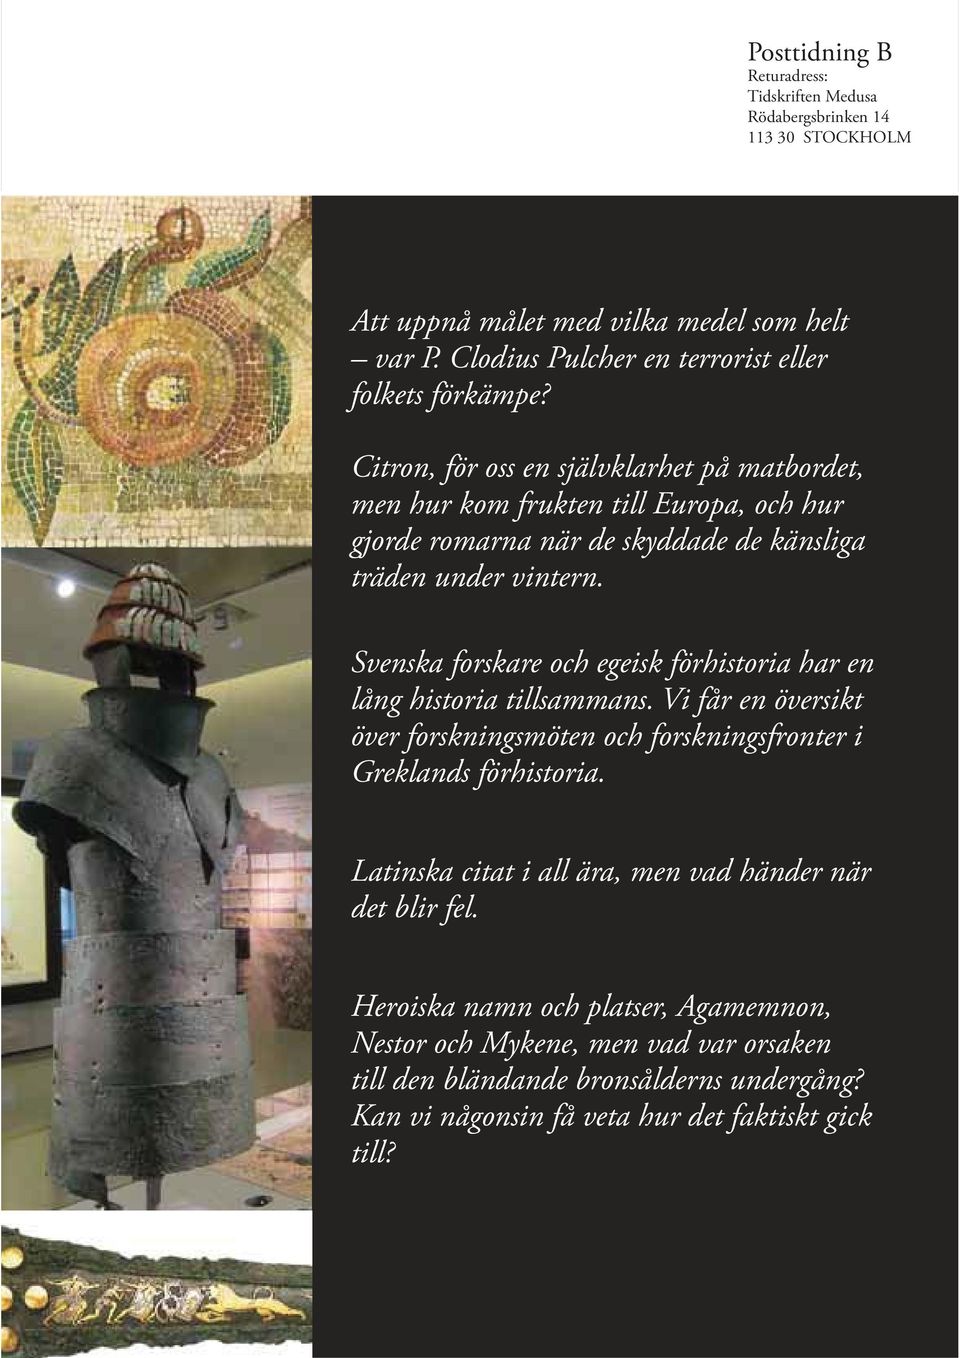 Svenska forskare och egeisk förhistoria har en lång historia tillsammans. Vi får en översikt över forskningsmöten och forskningsfronter i Greklands förhistoria.